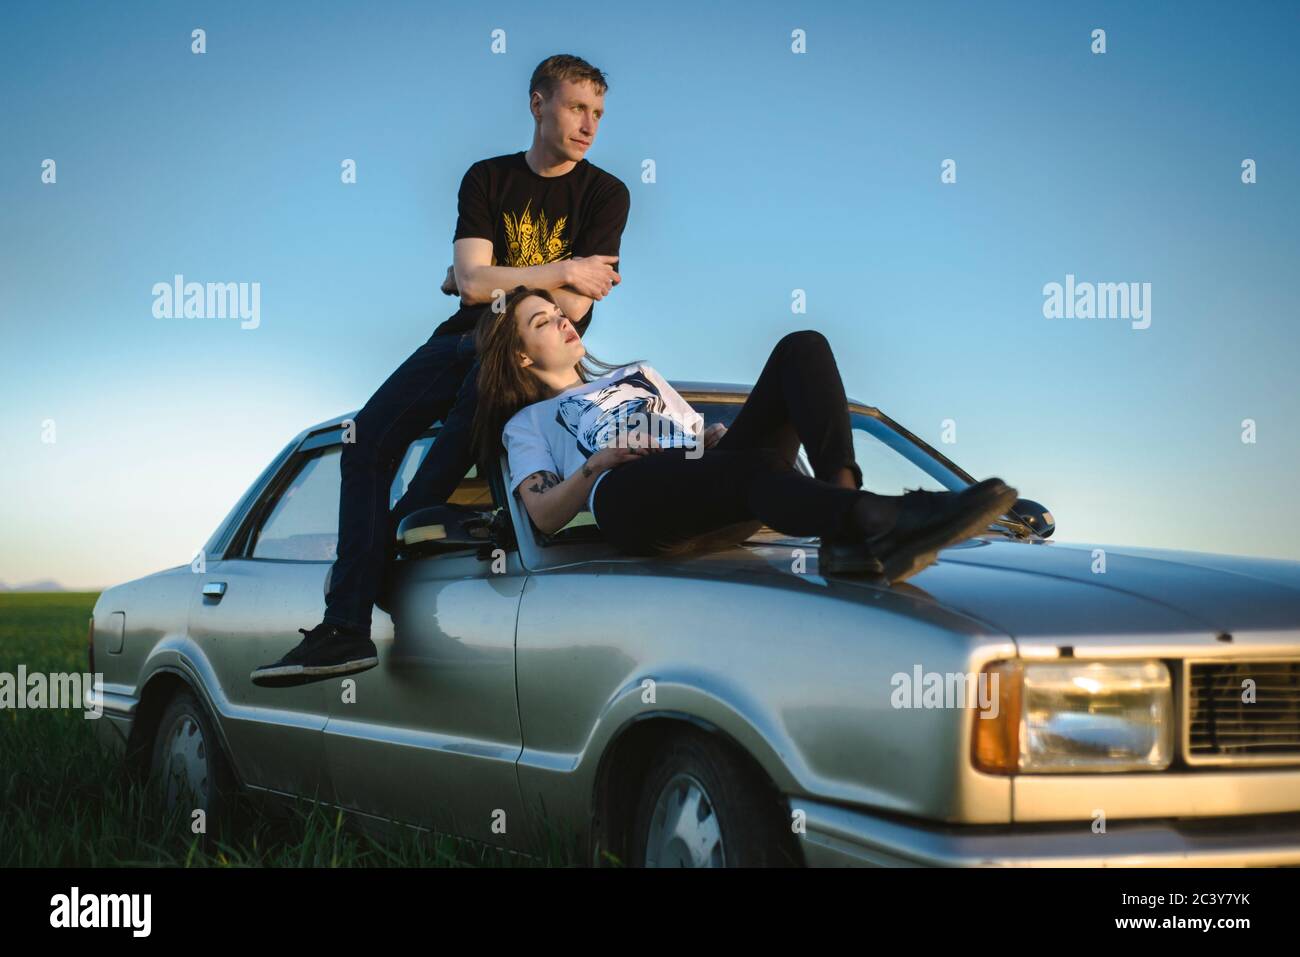 Ucraina, Crimea, coppia seduta su un'auto di vecchio stile in un paesaggio rurale Foto Stock